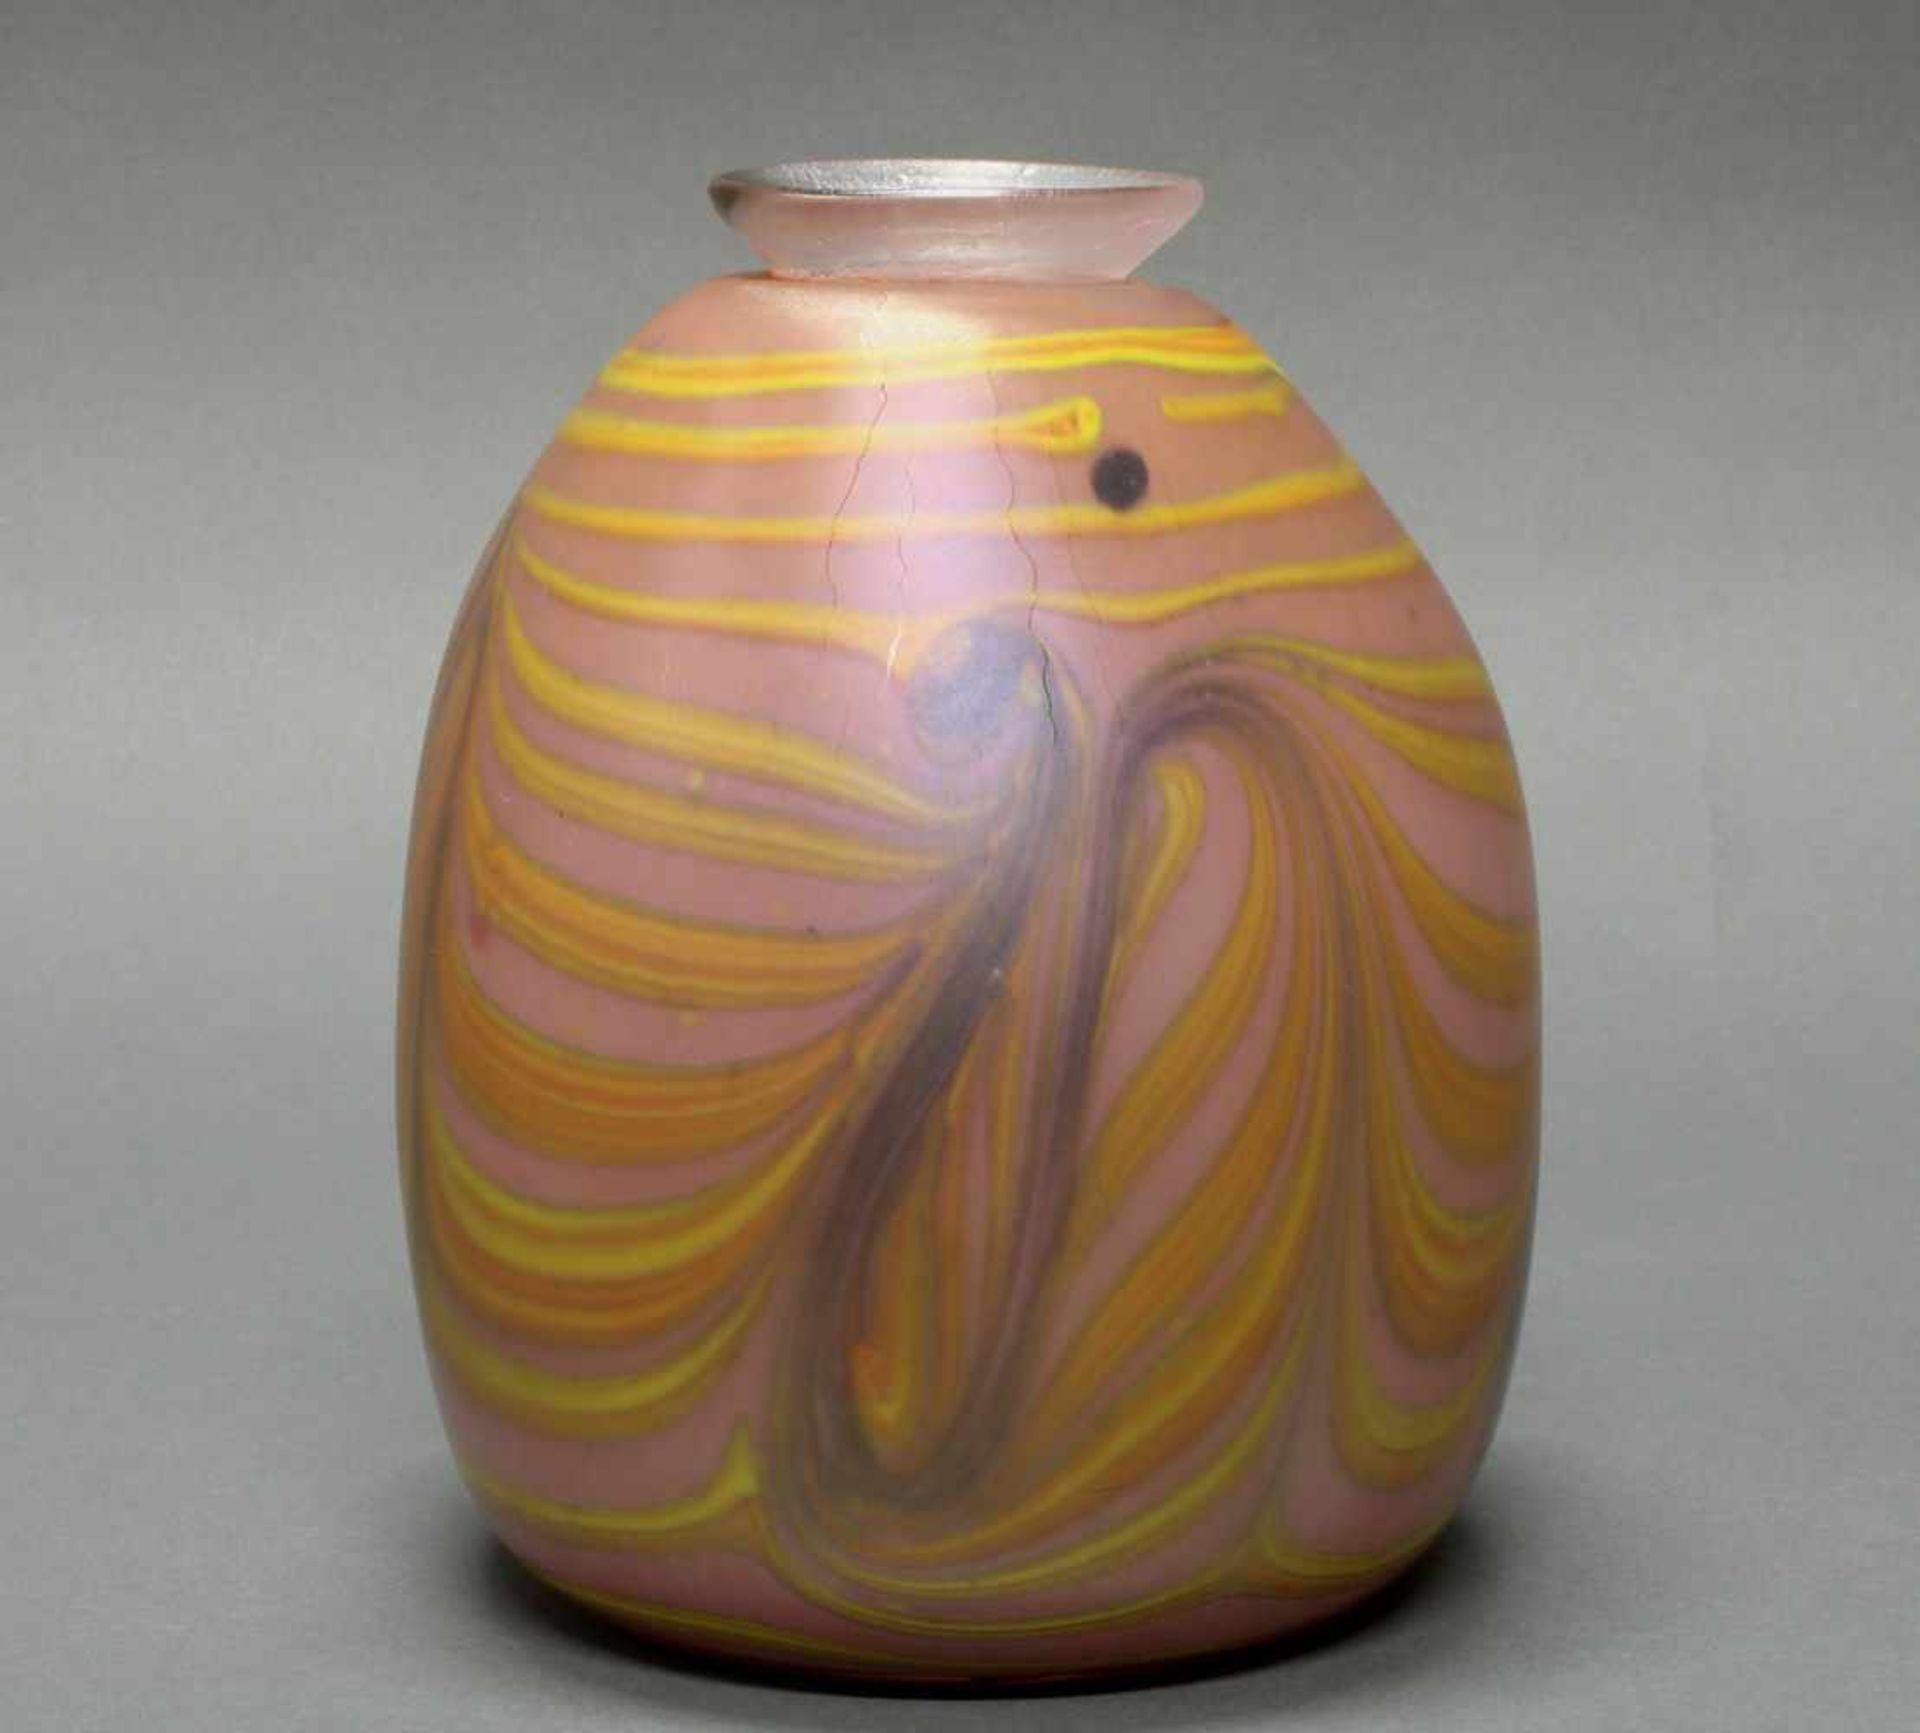 Vase, Erwin Eisch, 1978, Glas, mattierte Wandung, violetter Grundton mit unregelmäßigen